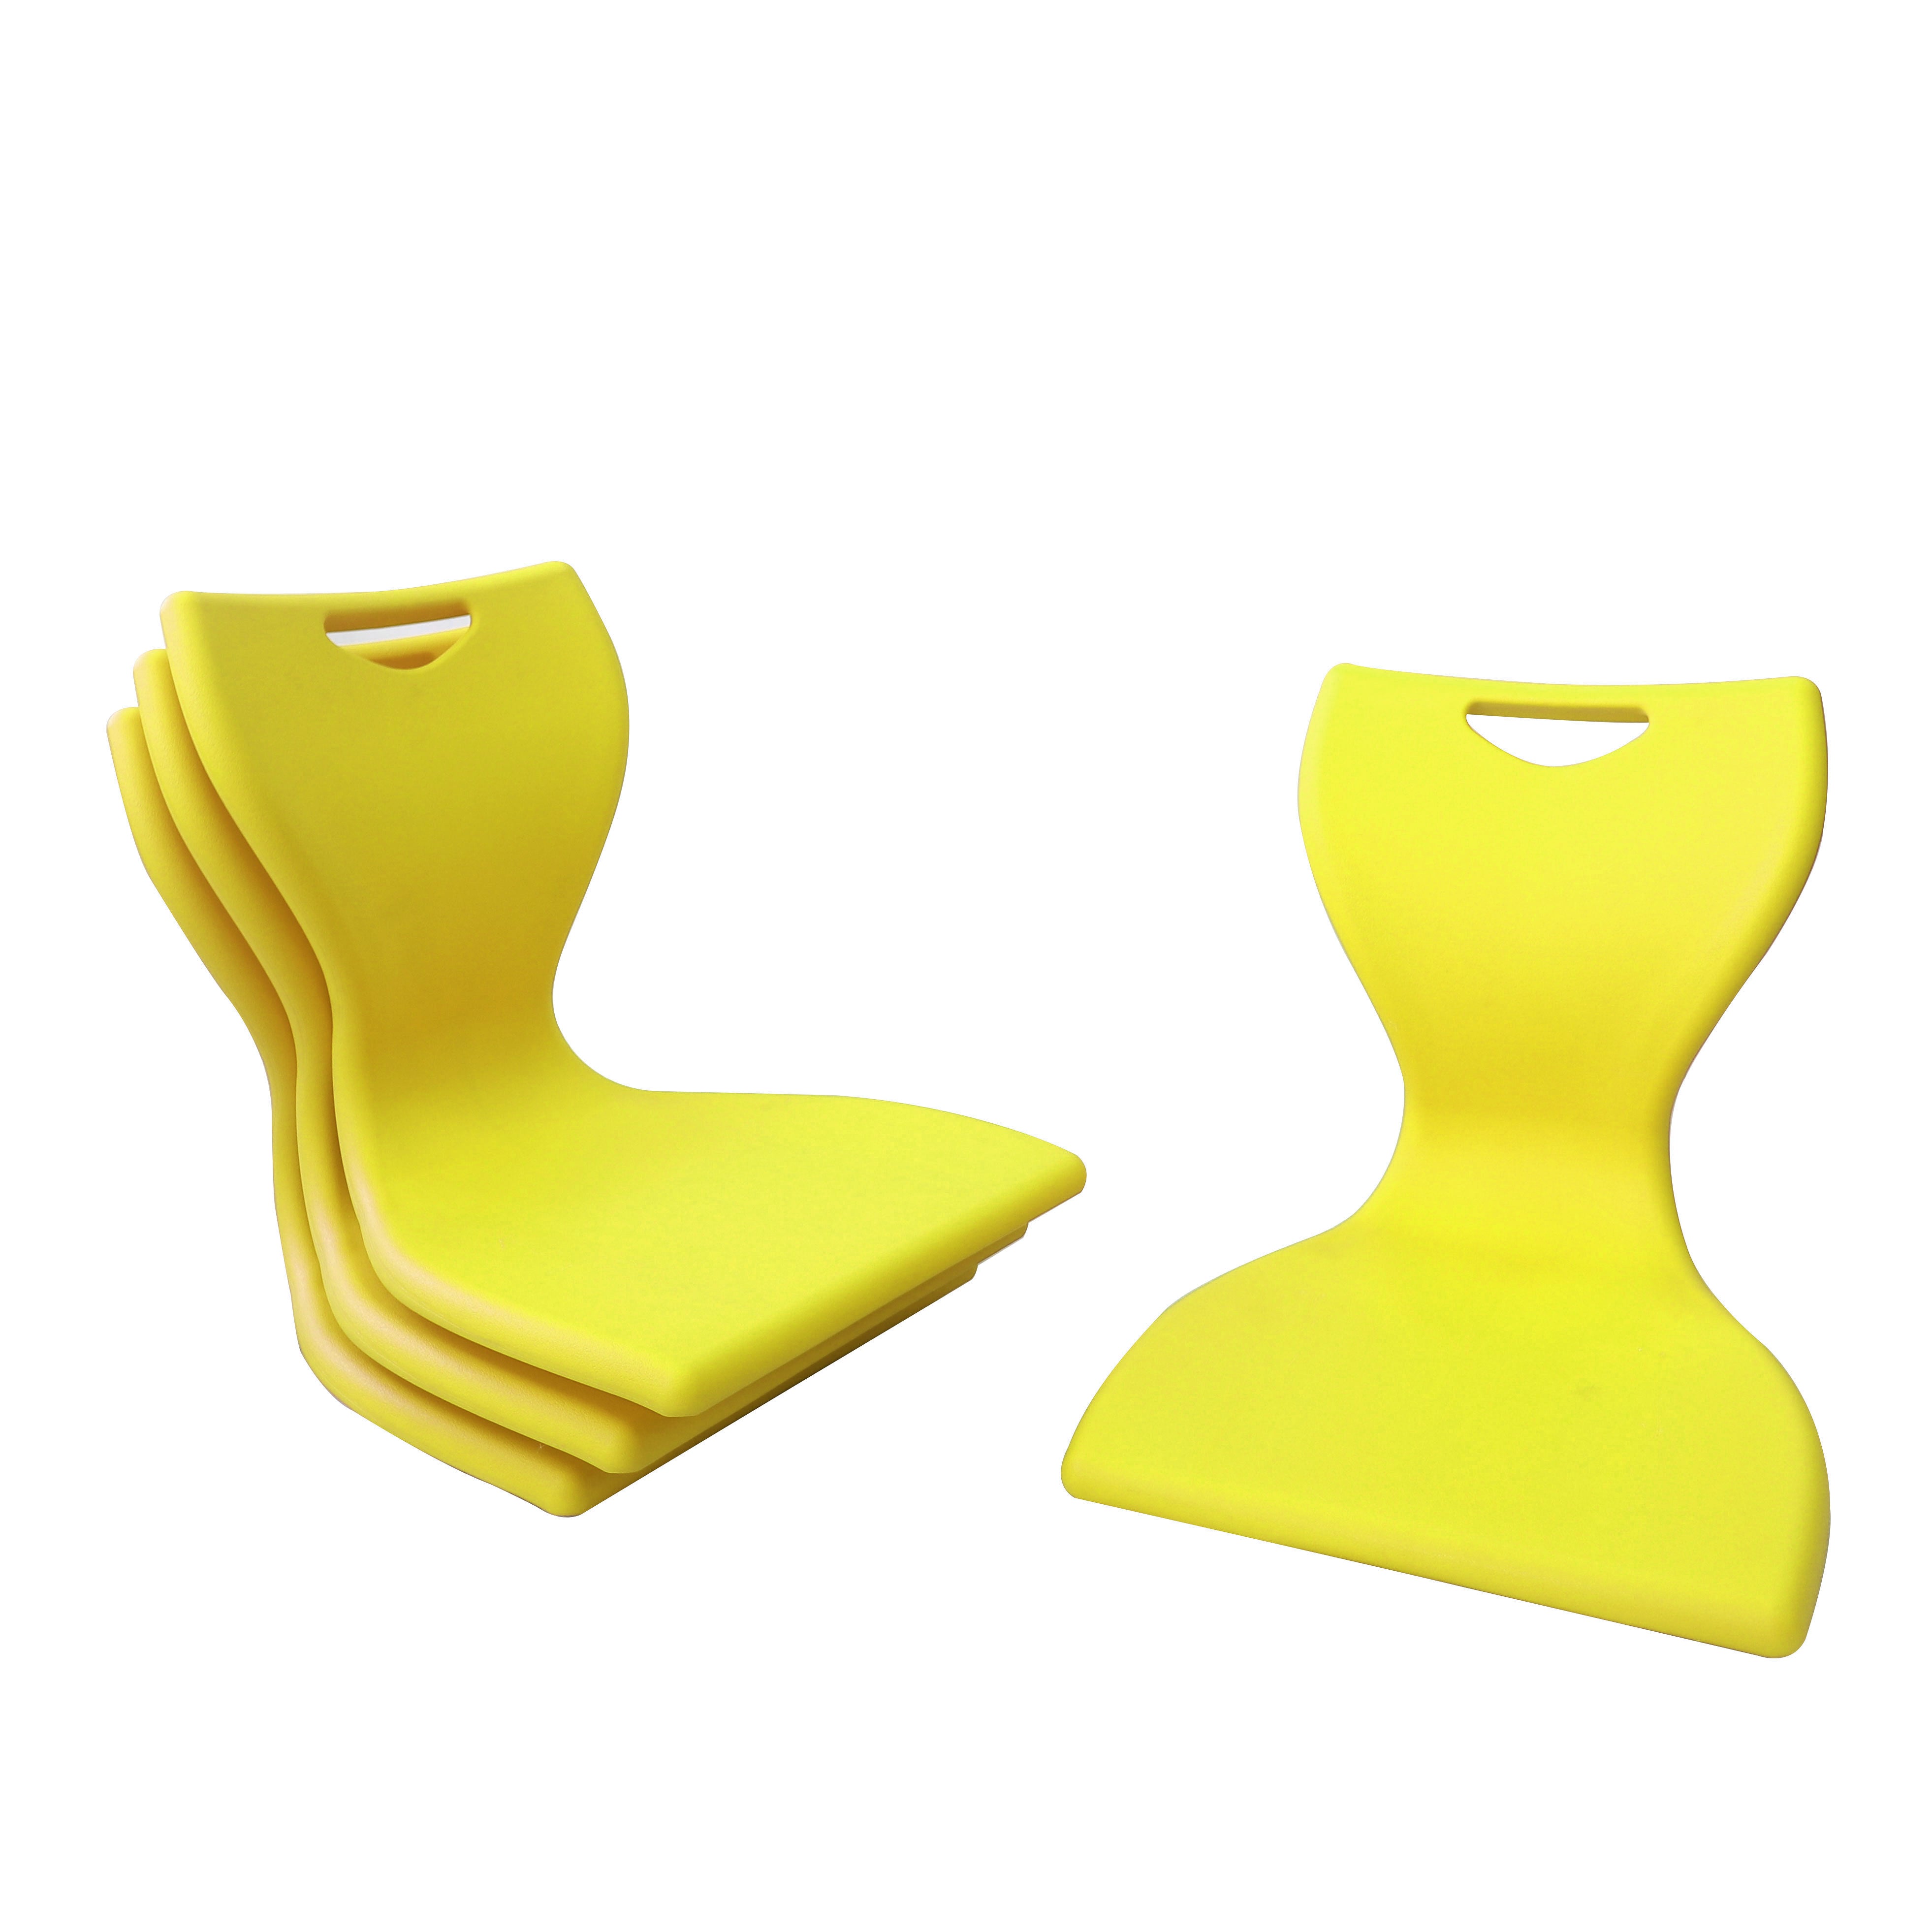 Buy EN Floor Chair Online | Office Line Australia